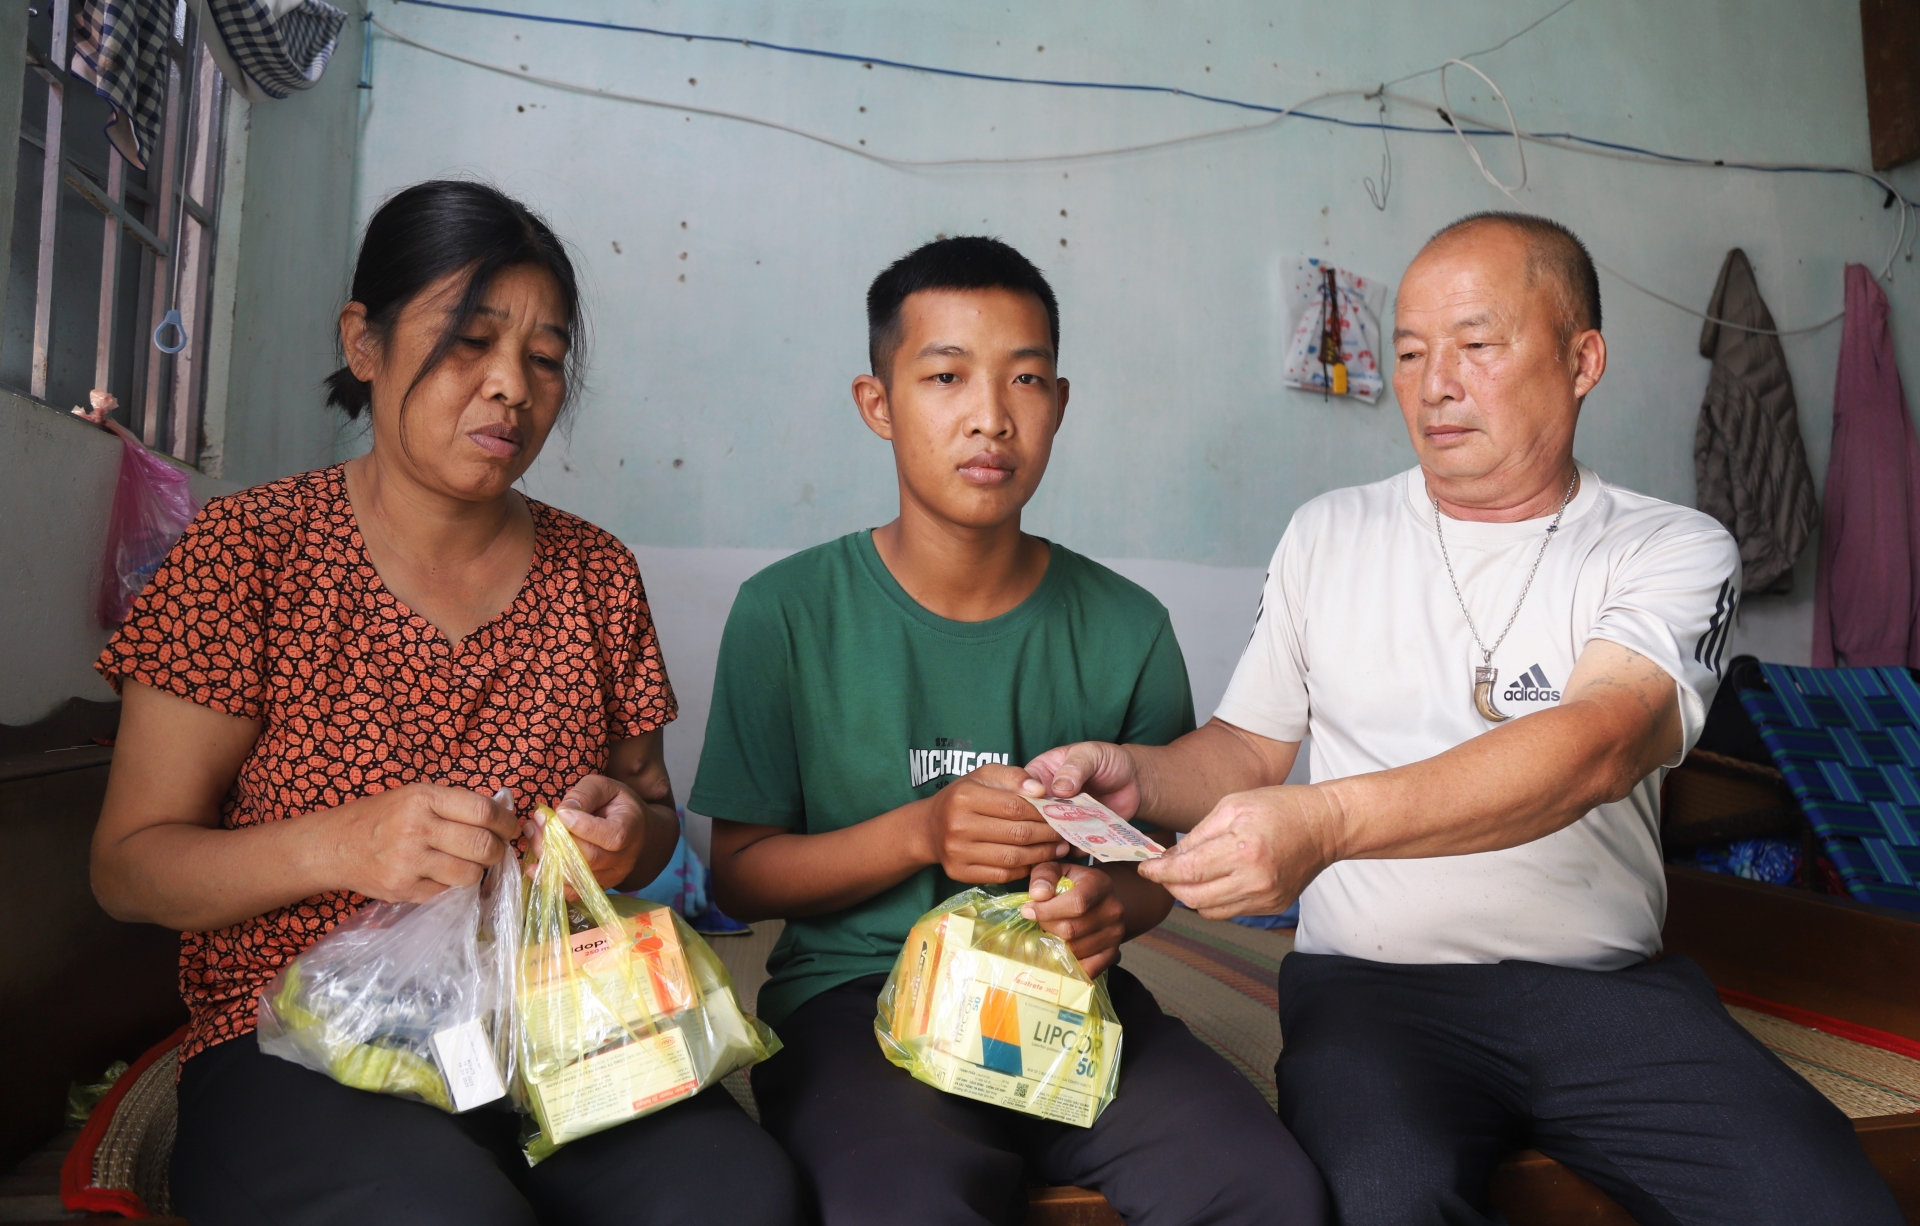 Thương cảm trước hoàn cảnh đáng thương của mẹ con bà Rõ, tỉnh thoảng những người dân tại Tổ dân phố 10 (phường BLao) lại gom góp hỗ trợ giúp 2 mẹ con